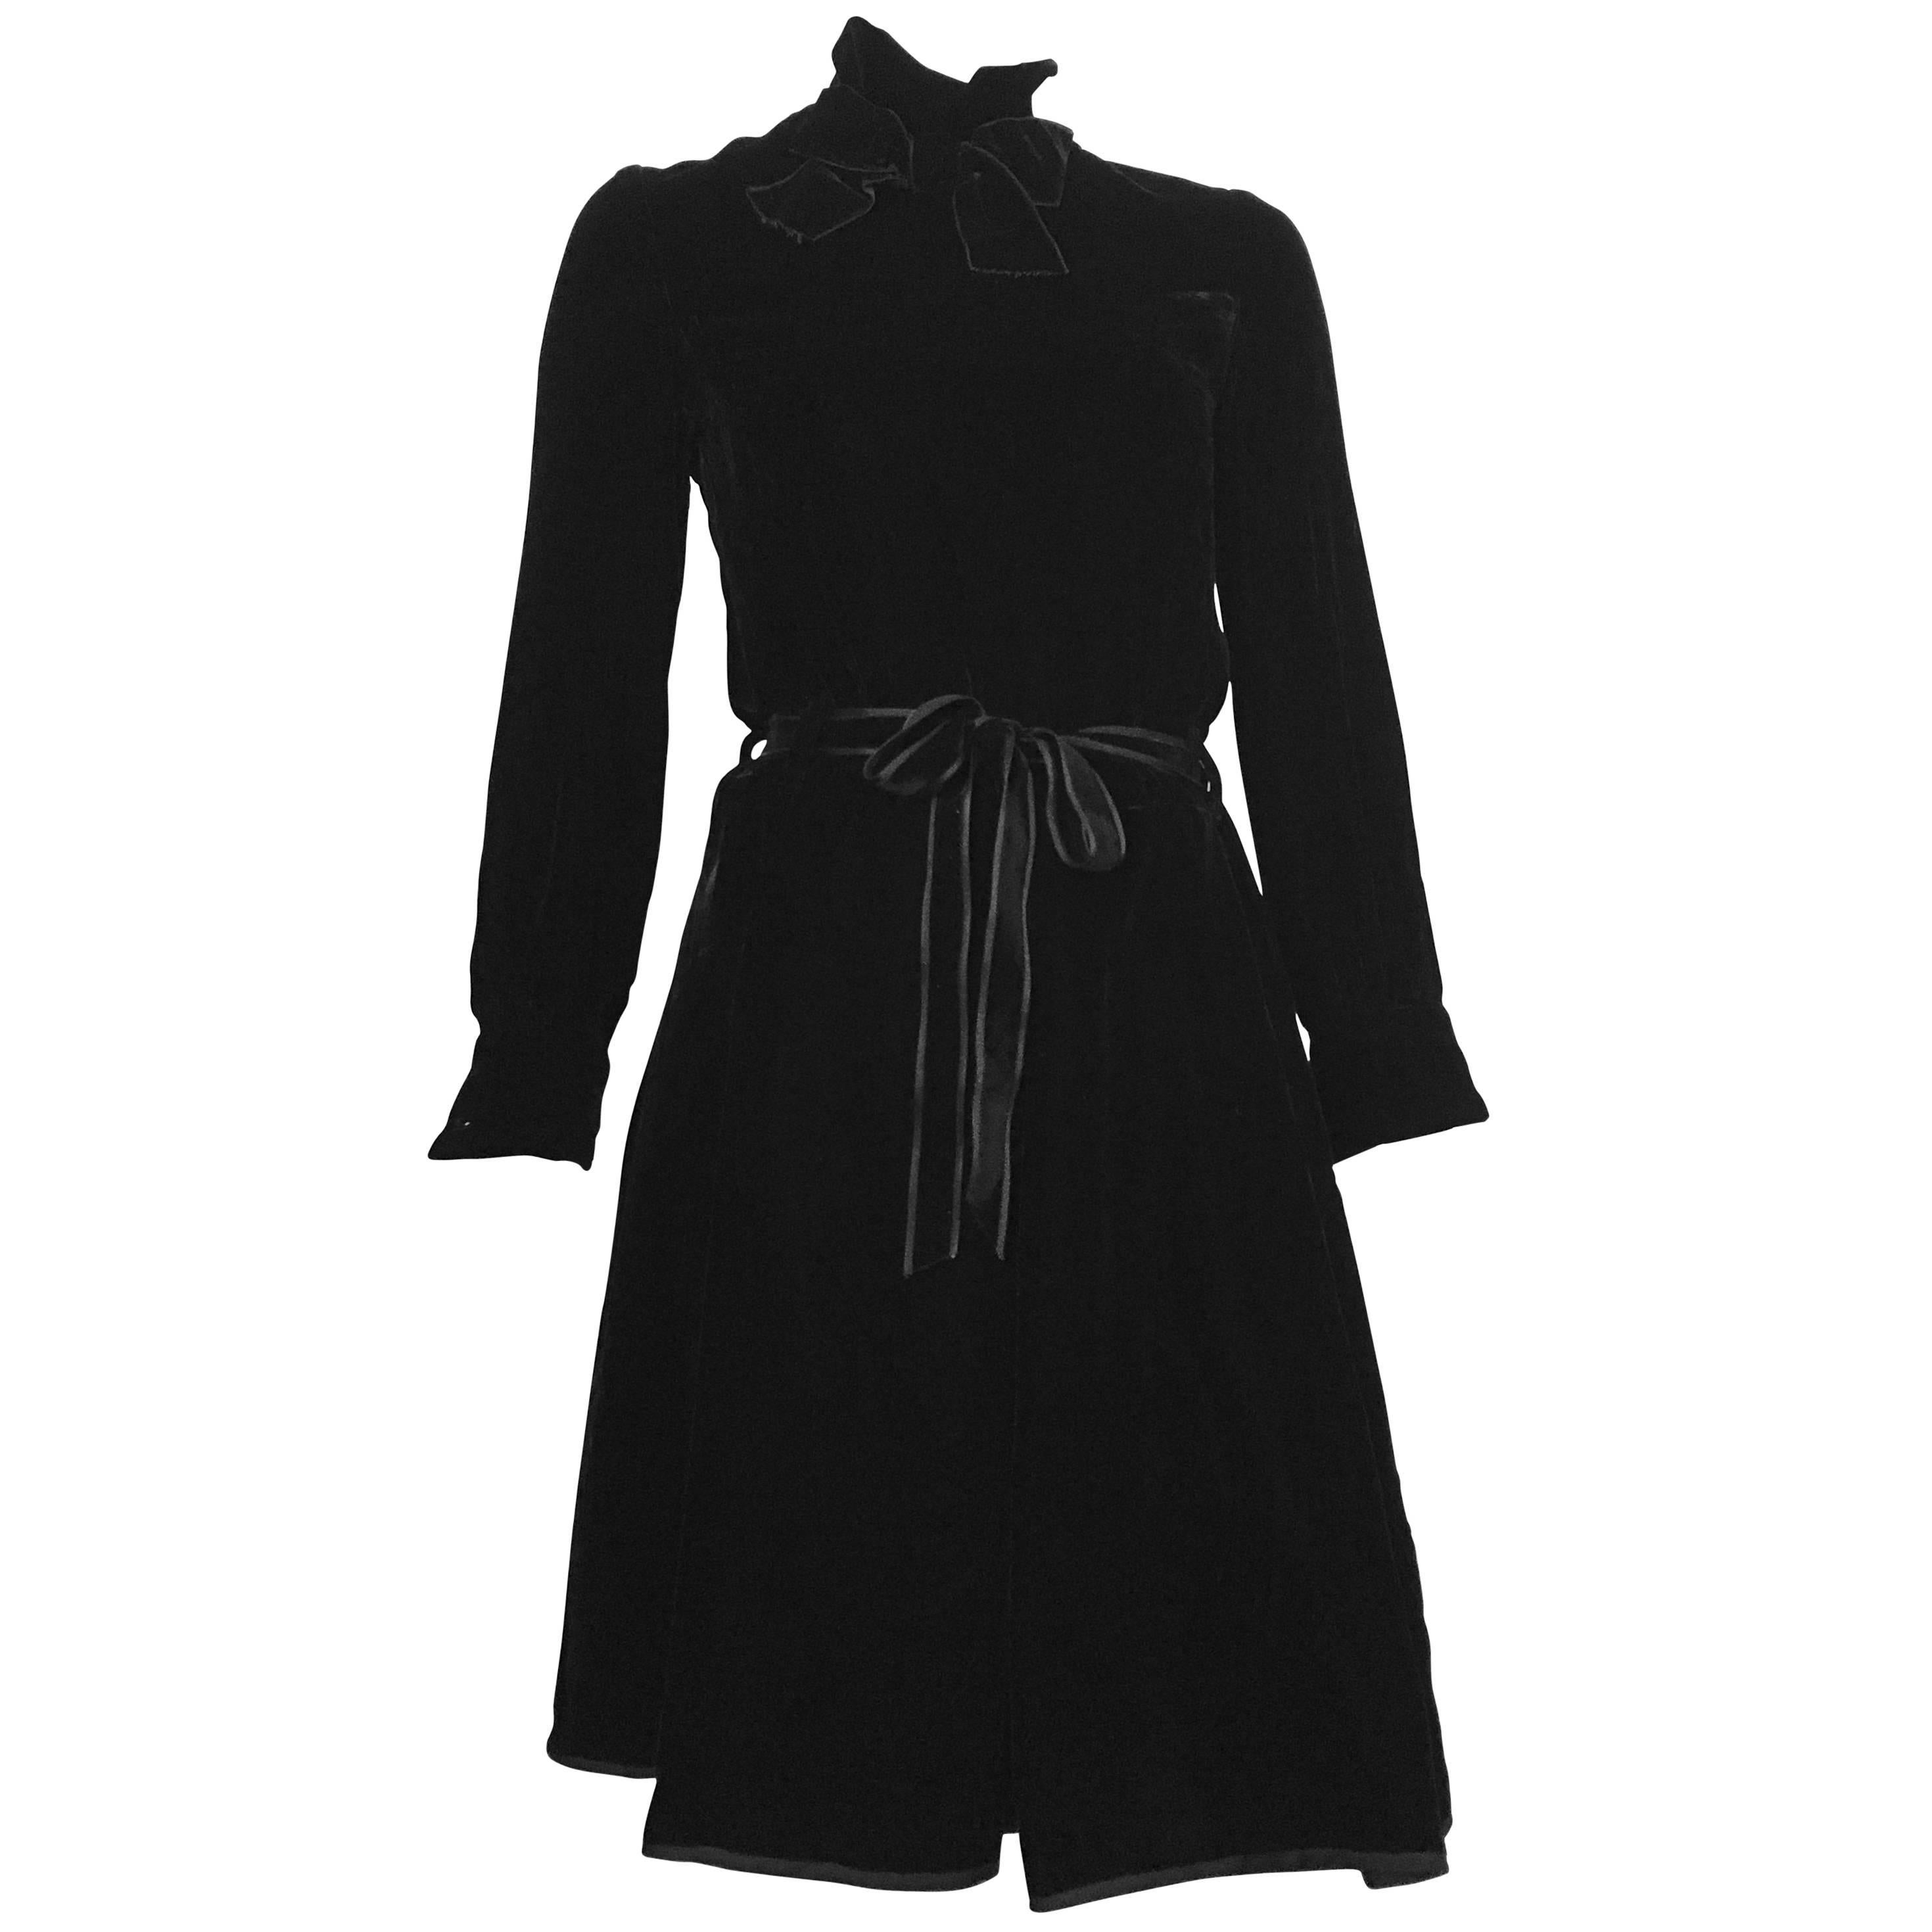 Dior for El Jay 1960s Black Velvet Evening Dress with Bow & Belt Size 6.